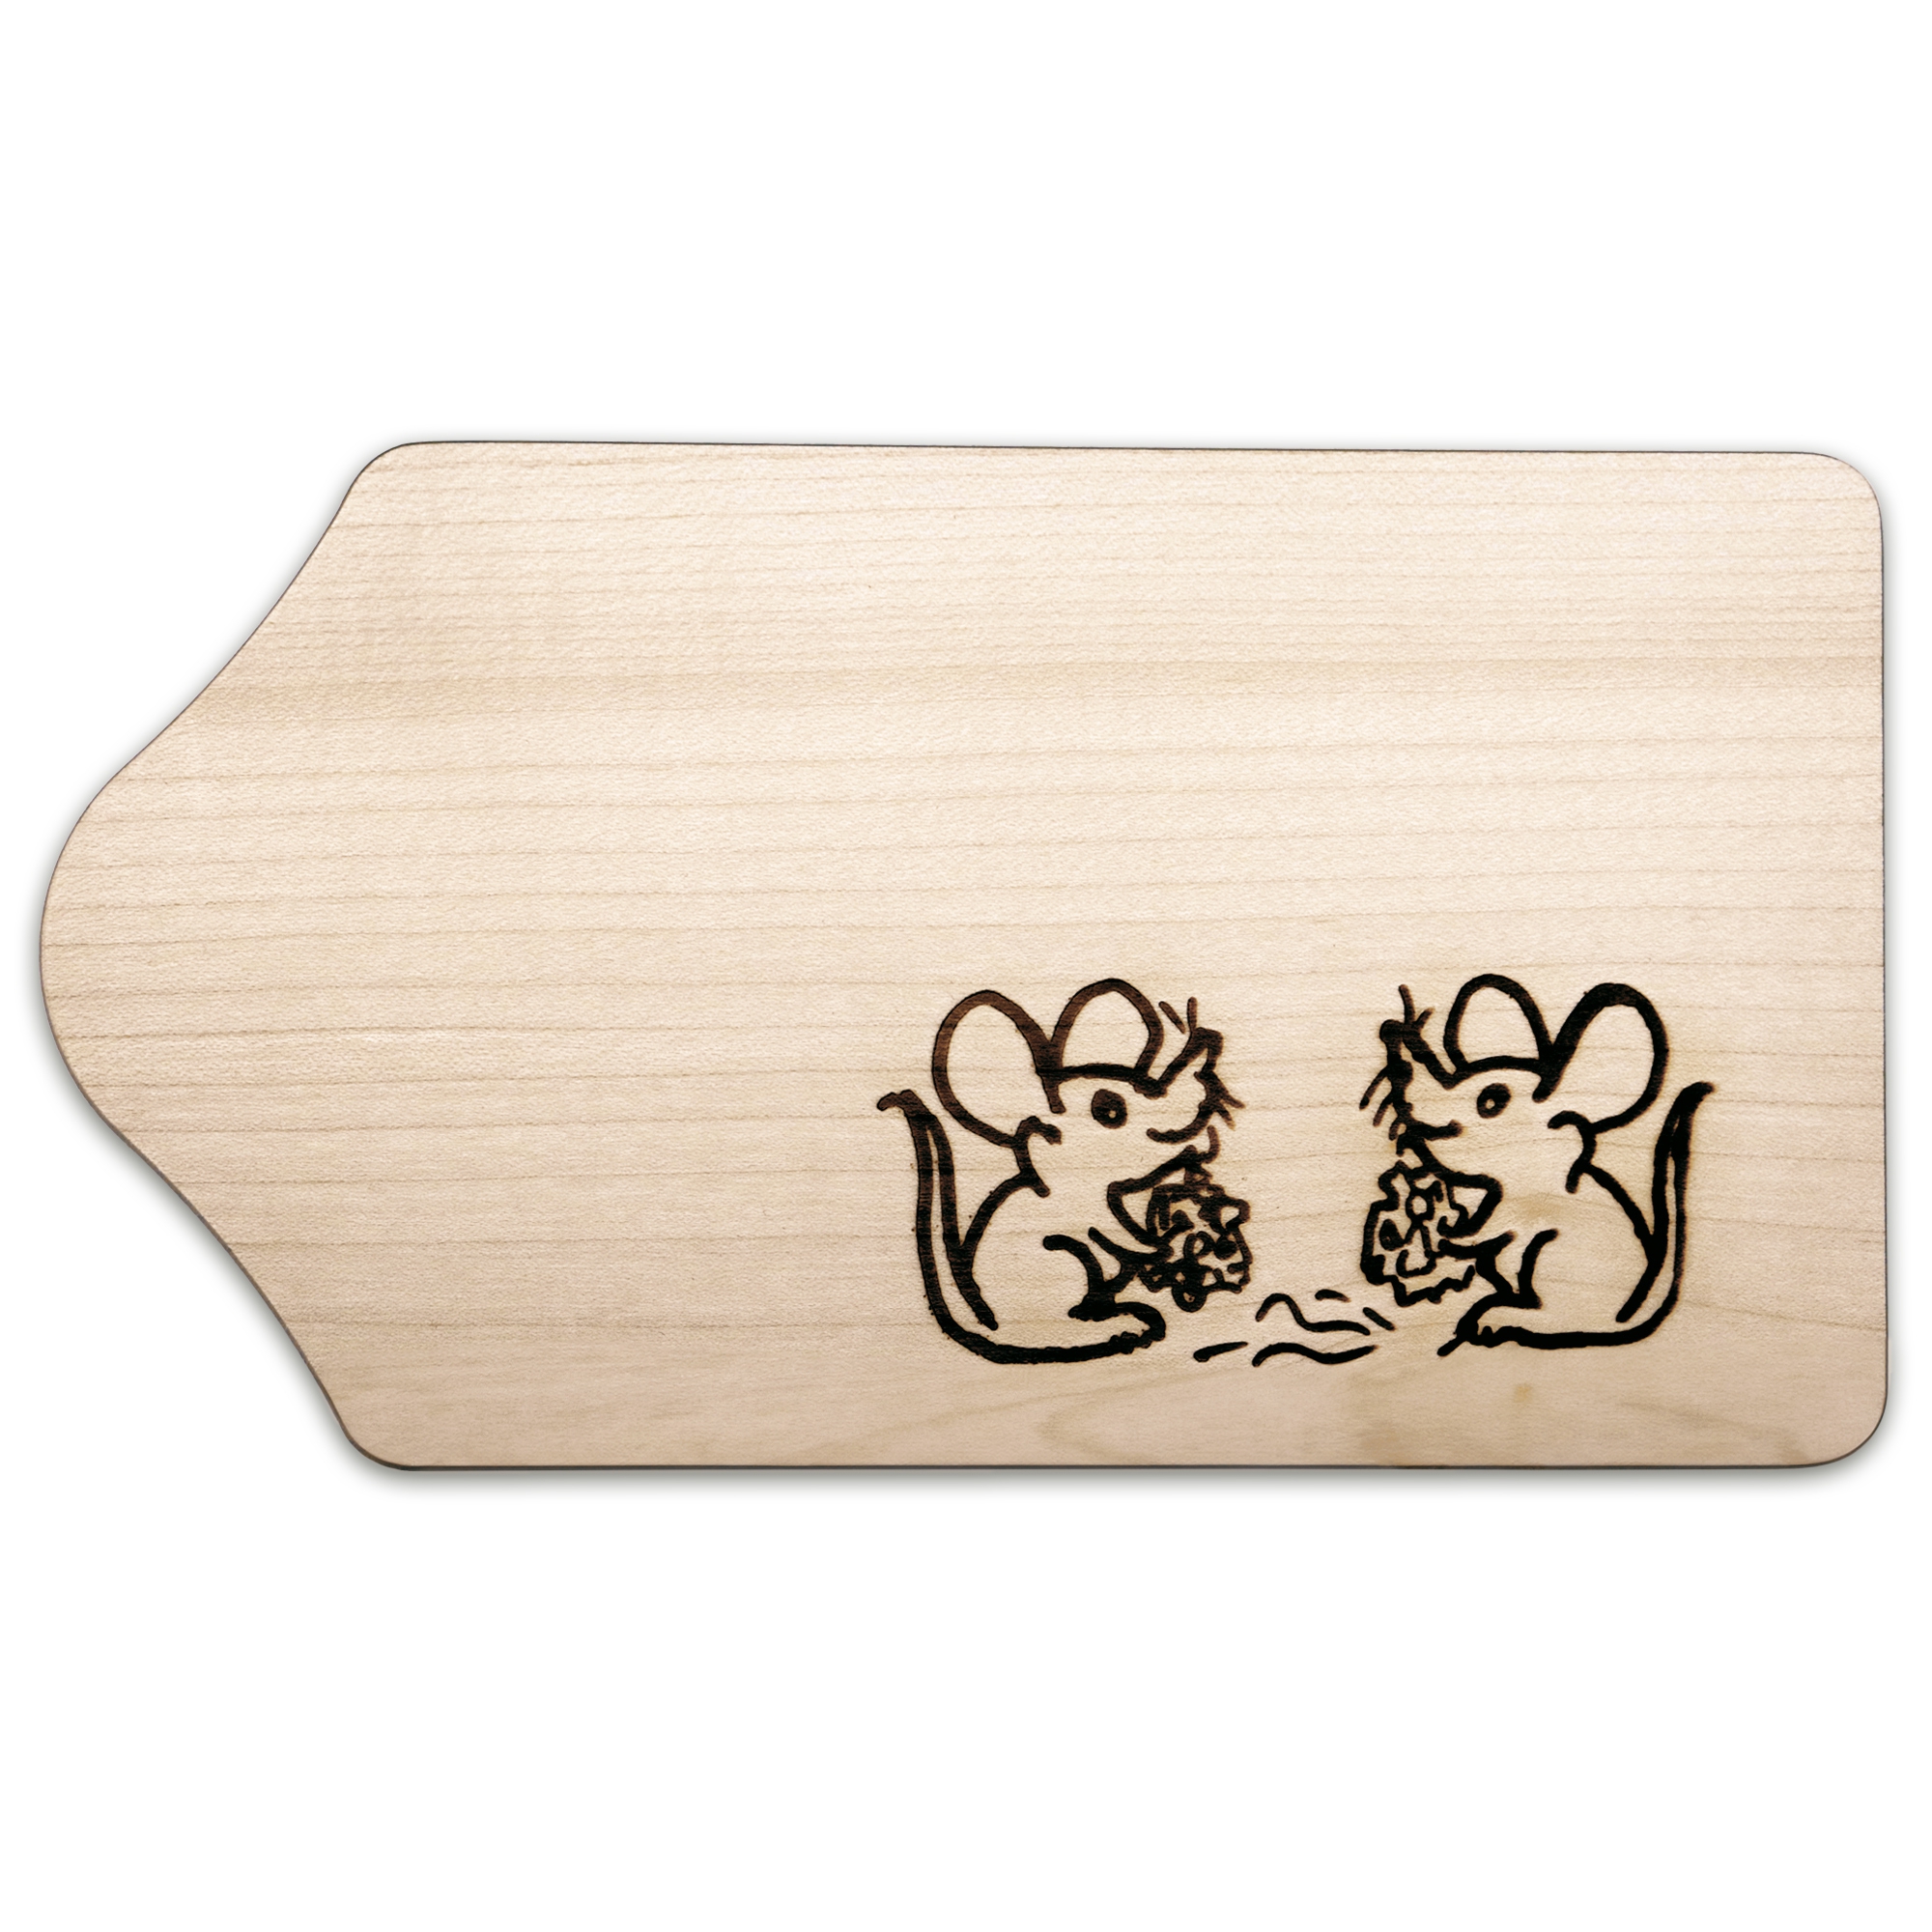 Culinaris - Breakfast board - maple wood - mice